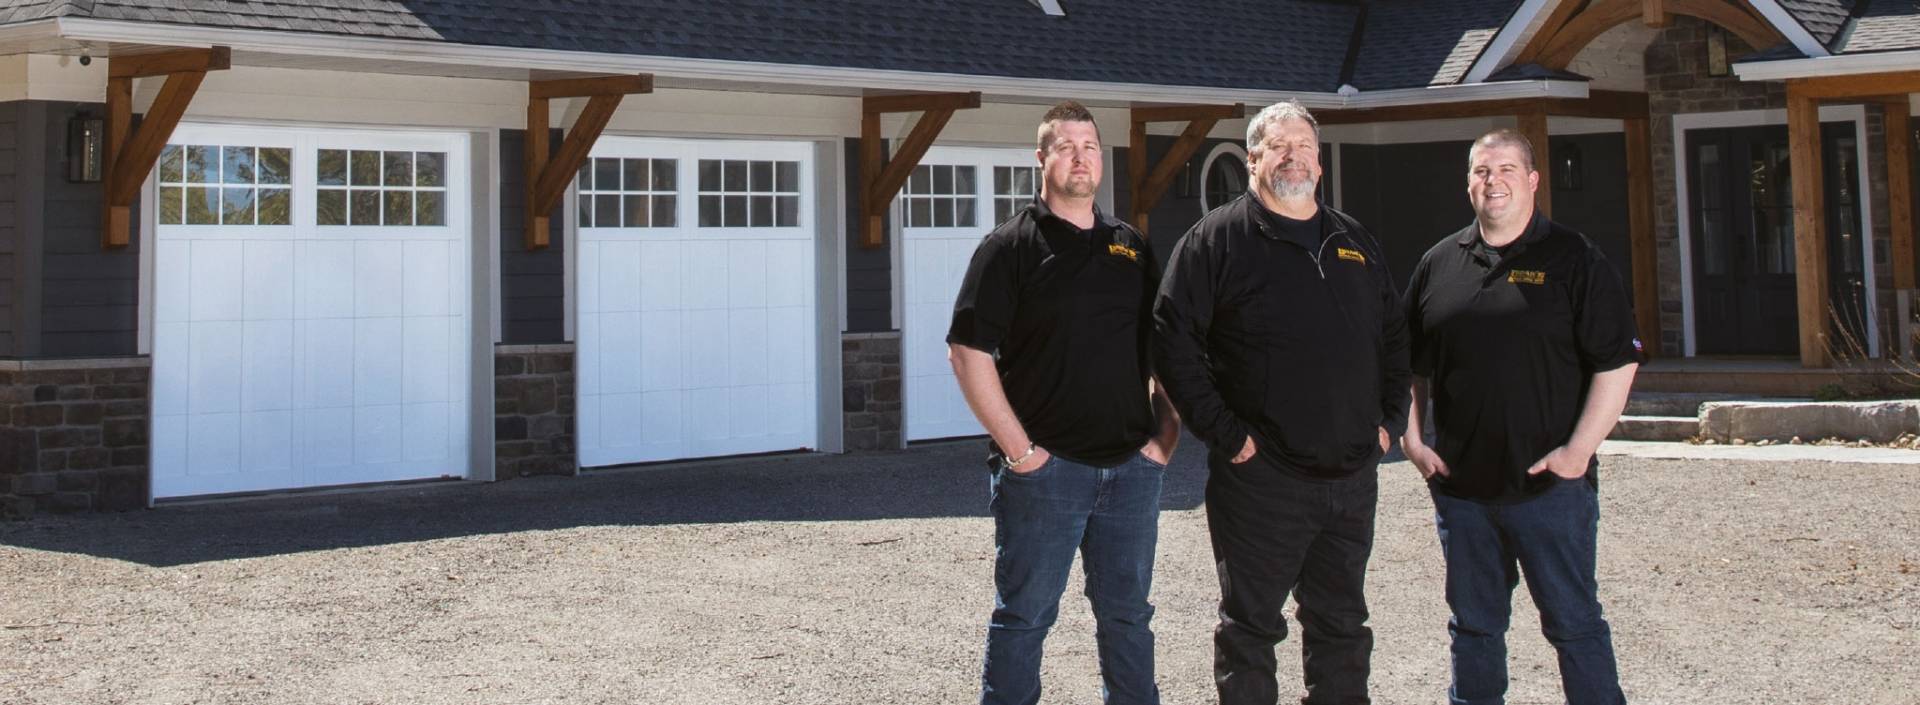 Aubrey, Jim and James Doan, of Doan’s Overhead Garage Doors